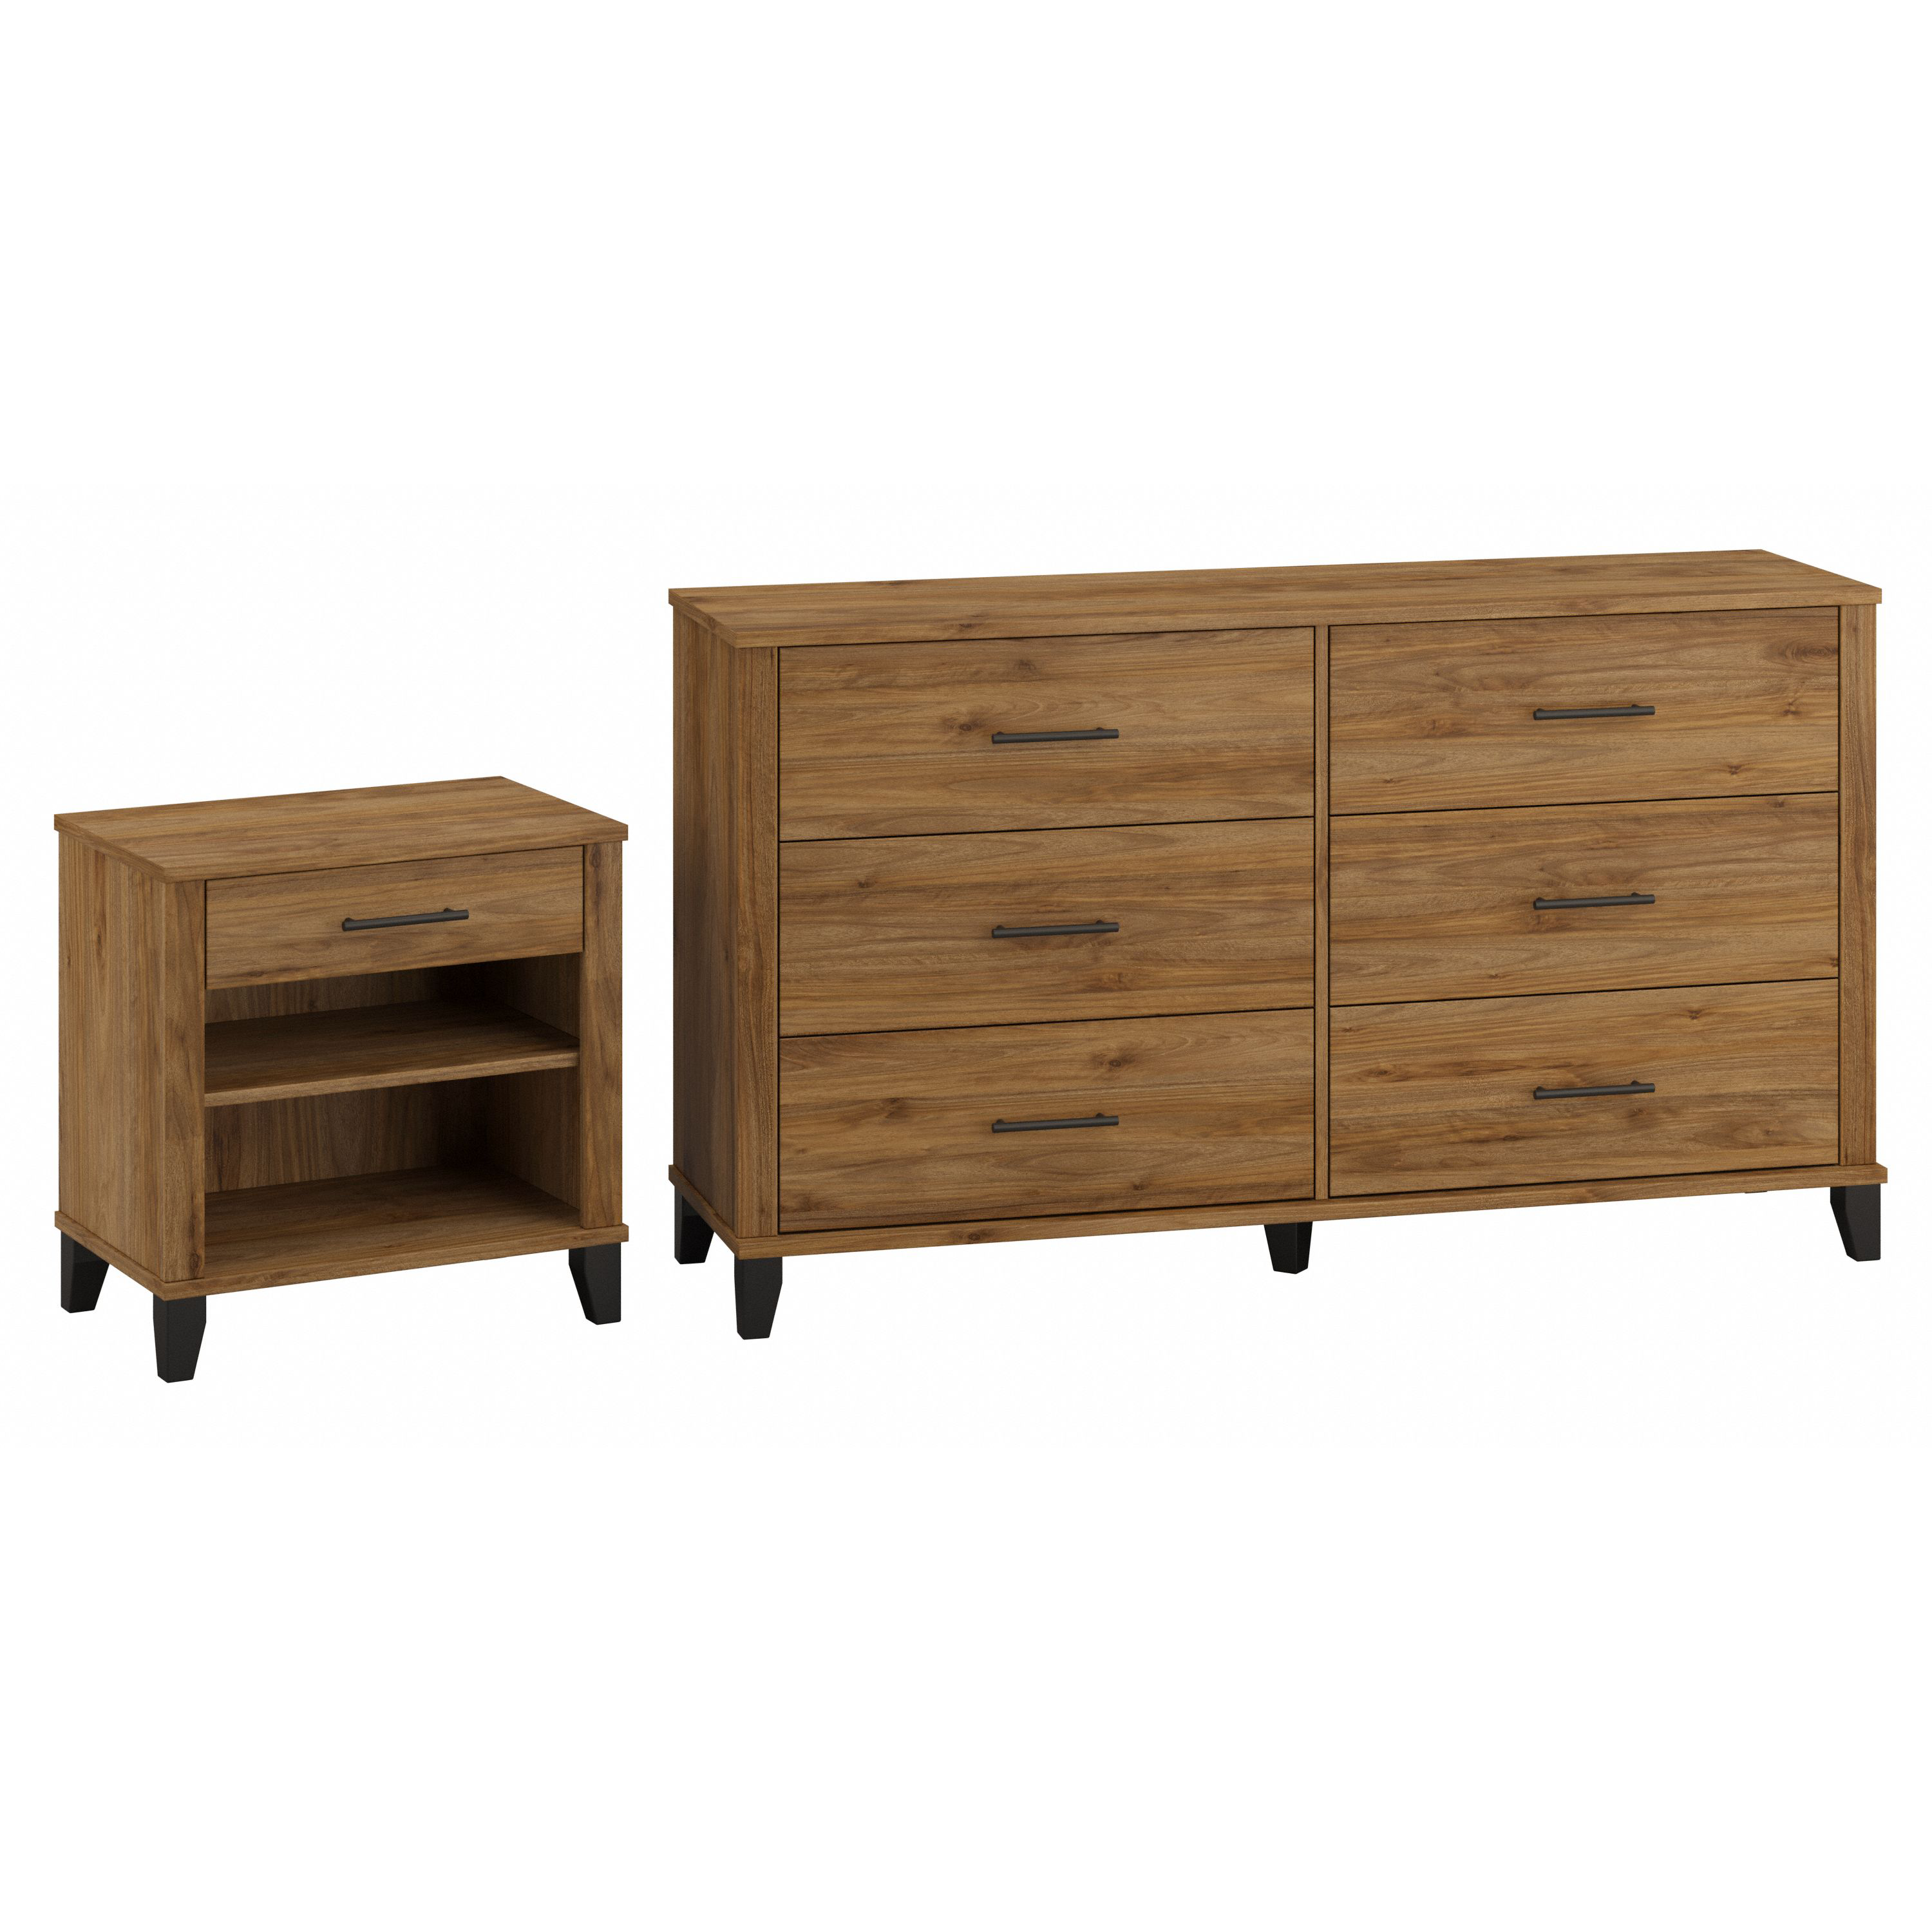 Shop Bush Furniture Somerset 6 Drawer Dresser and Nightstand Set 02 SET035FW #color_fresh walnut